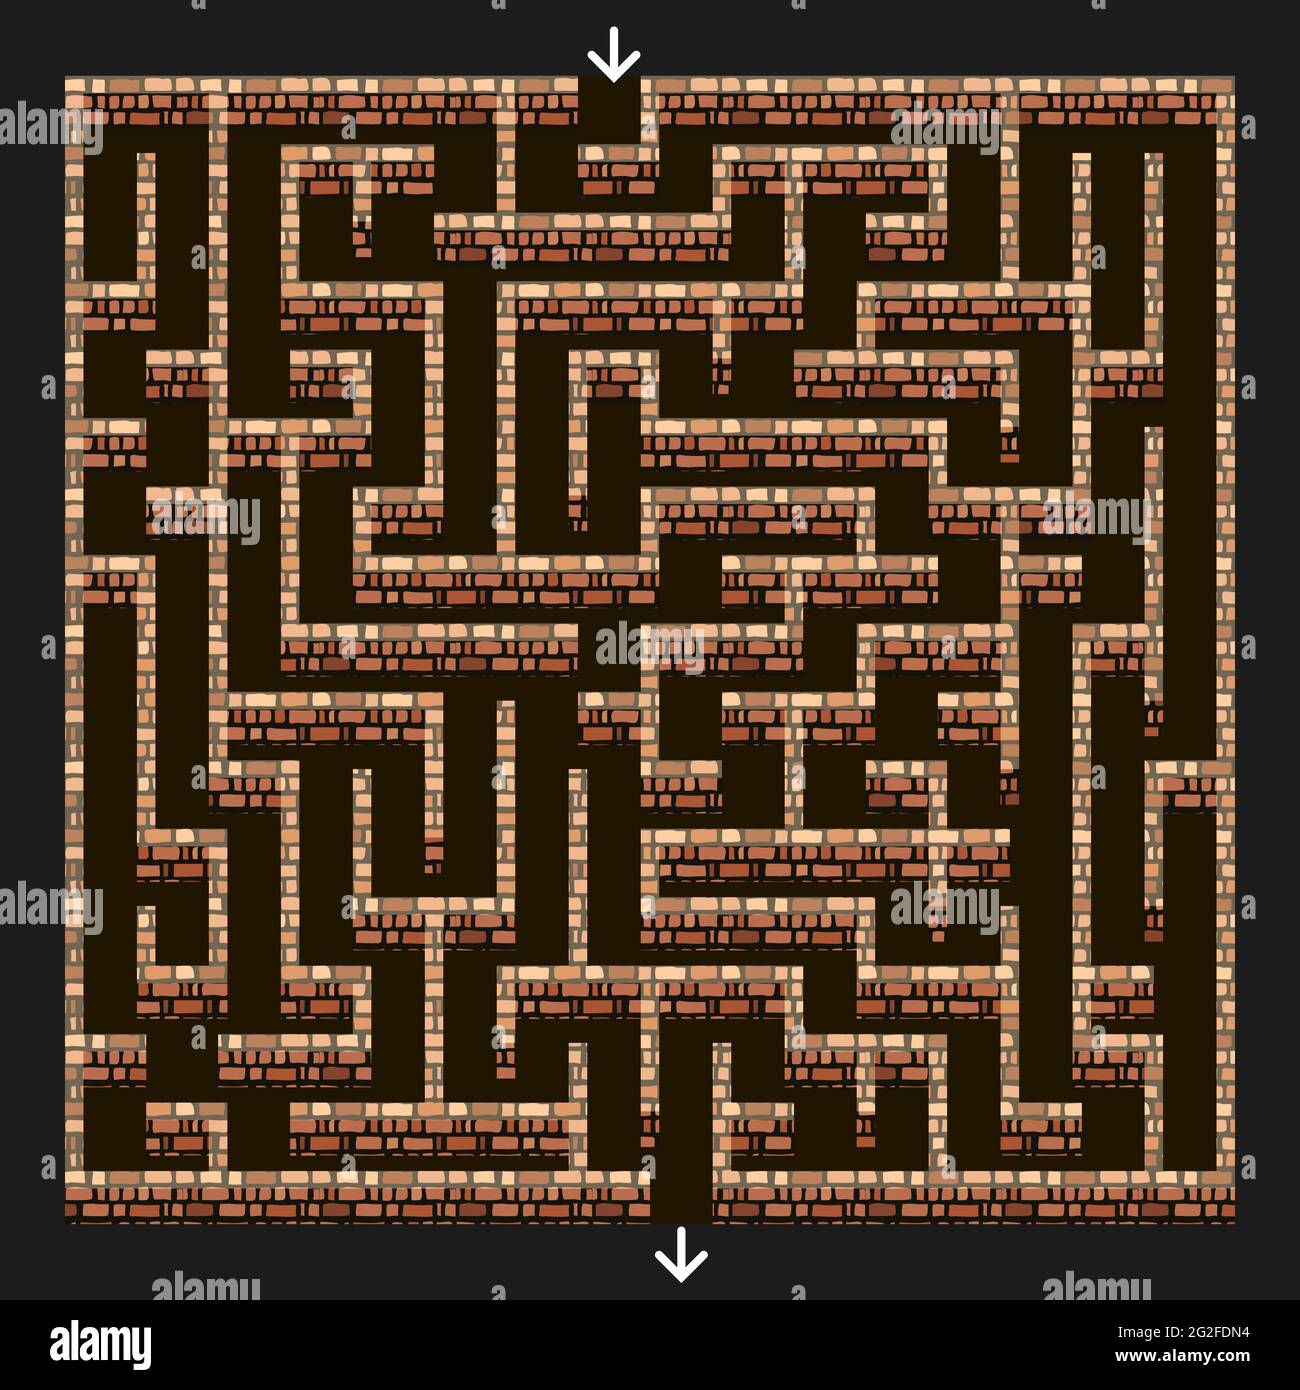 Maze 3d. Labyrinth mit Backsteinmauern für Puzzle oder Dungeon Flucht Spiel Level Design. Draufsicht. Vektorgrafik Stock Vektor